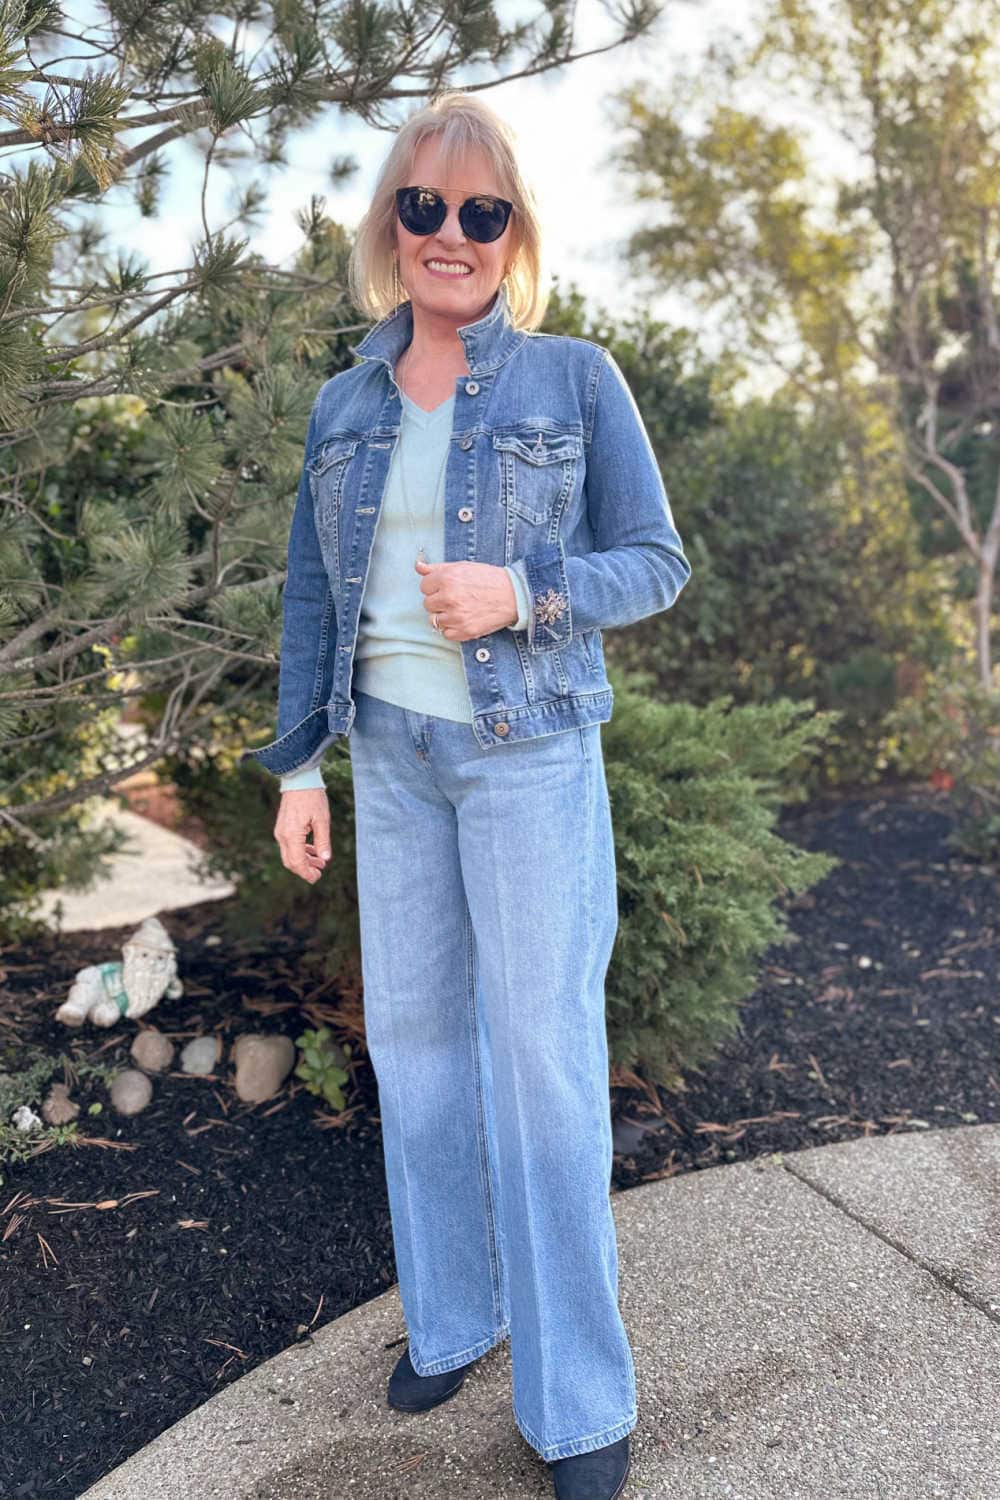 landheer Uitdrukkelijk Onzuiver Wearable Modern Jeans For Women Over 50 - A Well Styled Life®